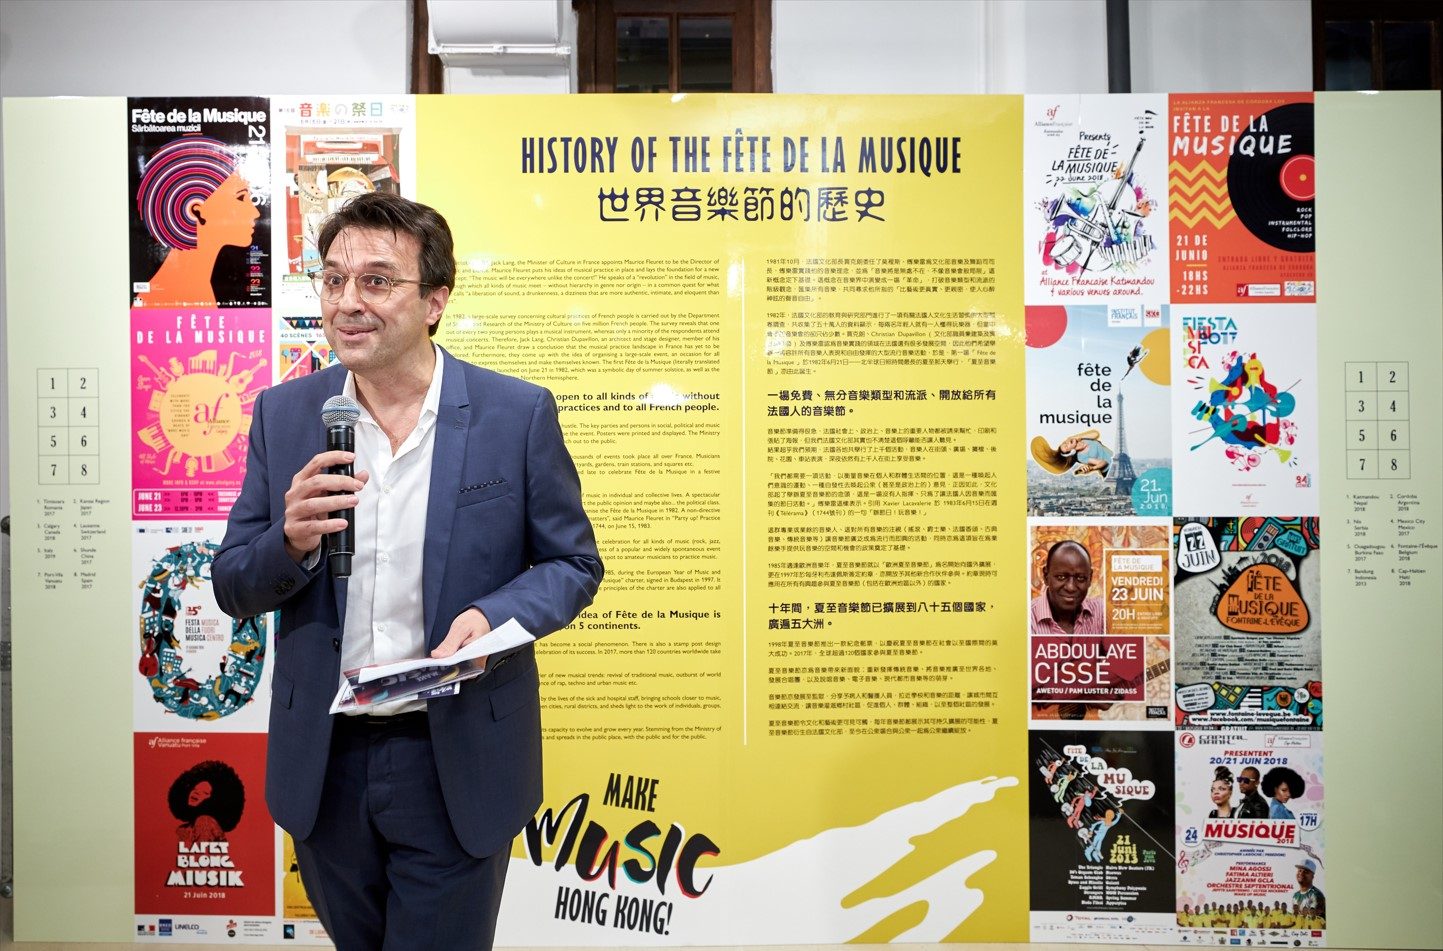 Exhibition on the Fête de la Musique History introduced by the Alliance Française executive director, Jean-Sébastien Attié, in 2019.